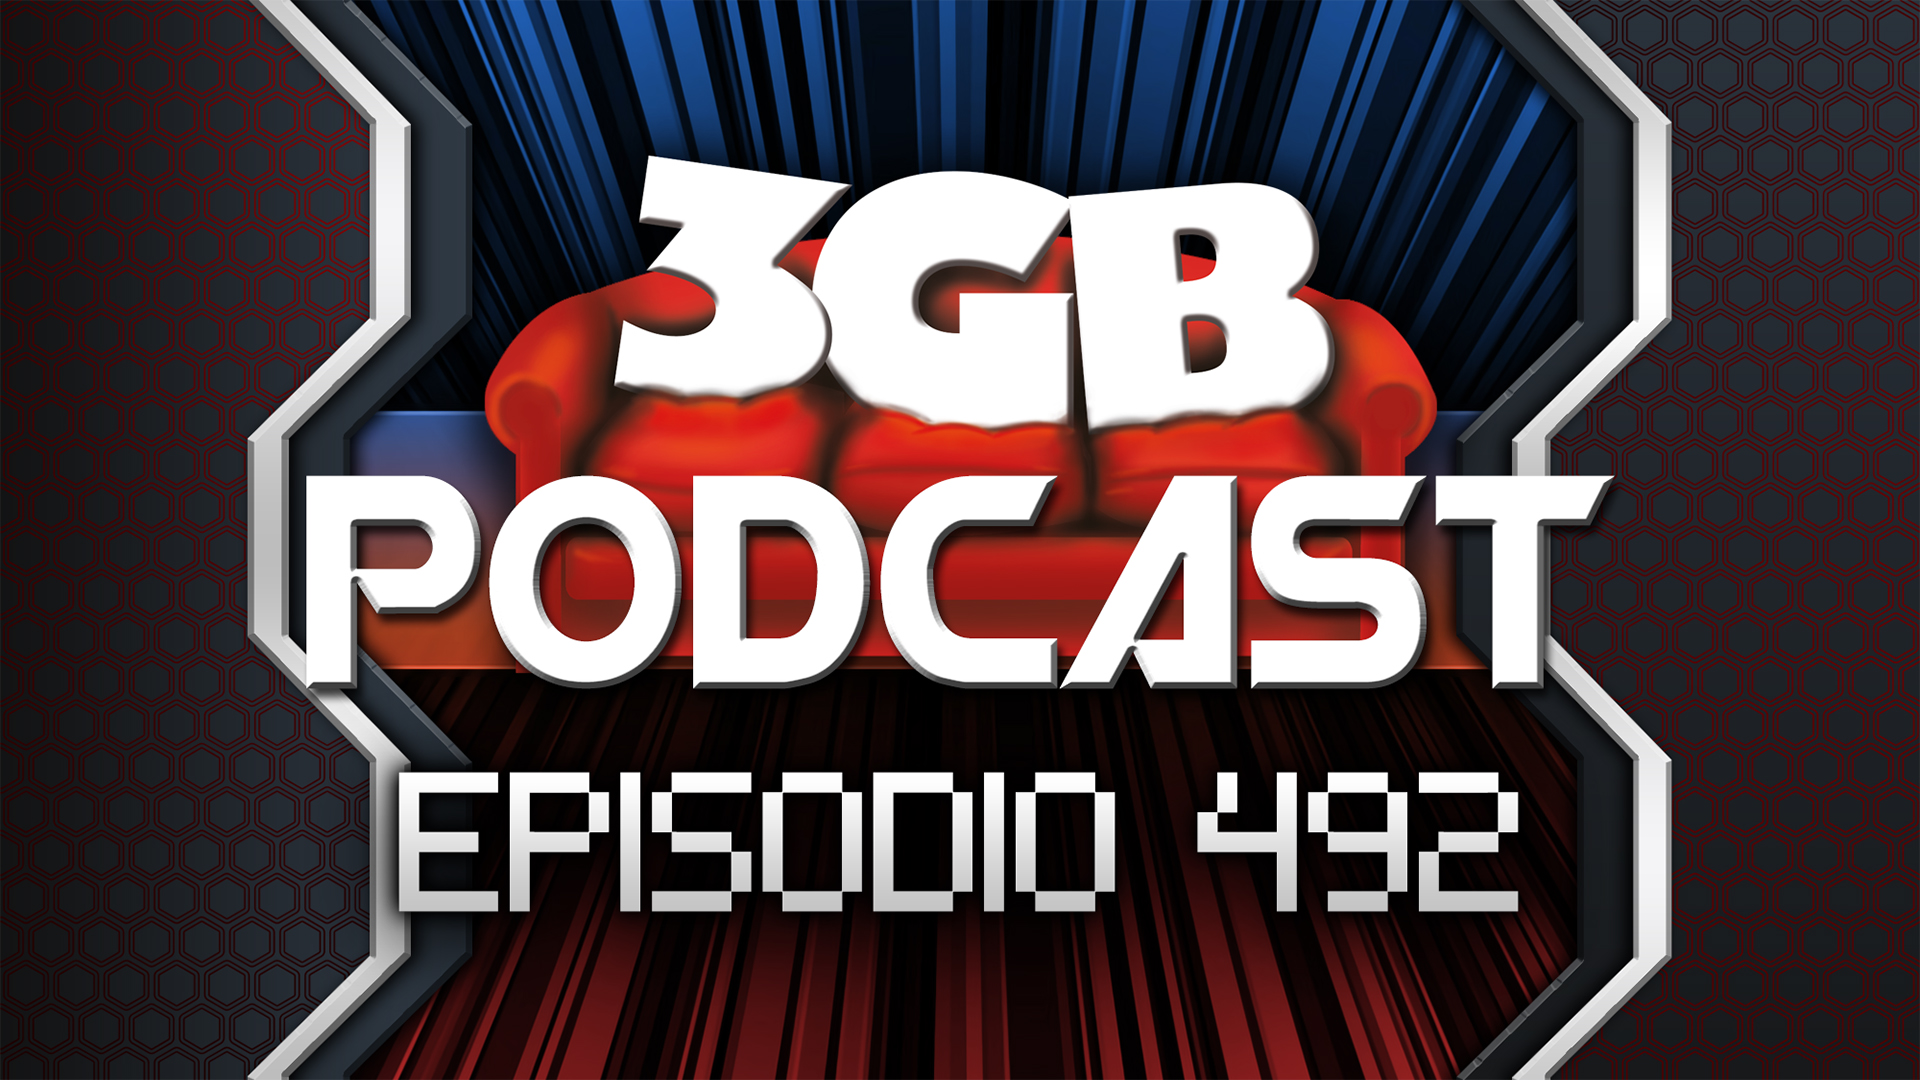 Podcast: Episodio 492, ¡Que fuerte!